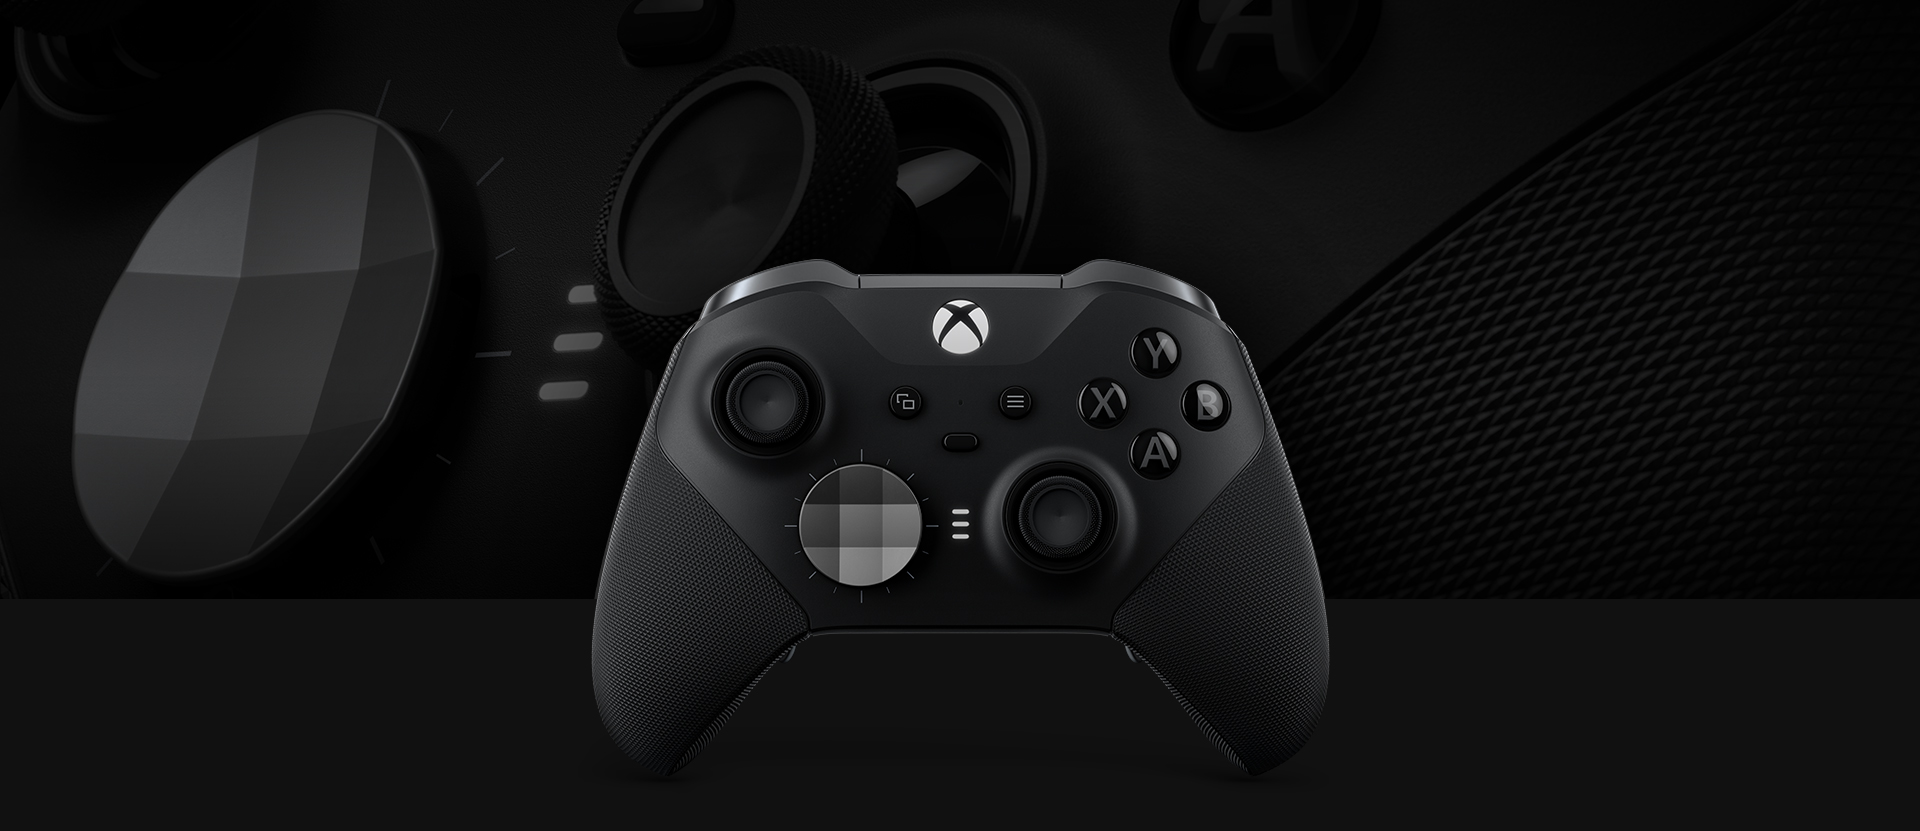 Originálny a značne vylepšený gamepad Xbox Wireless Controller Elite Series 2 bol navrhnutý v spolupráci s poprednými profesionálnymi hráčmi svetovej úrovne.